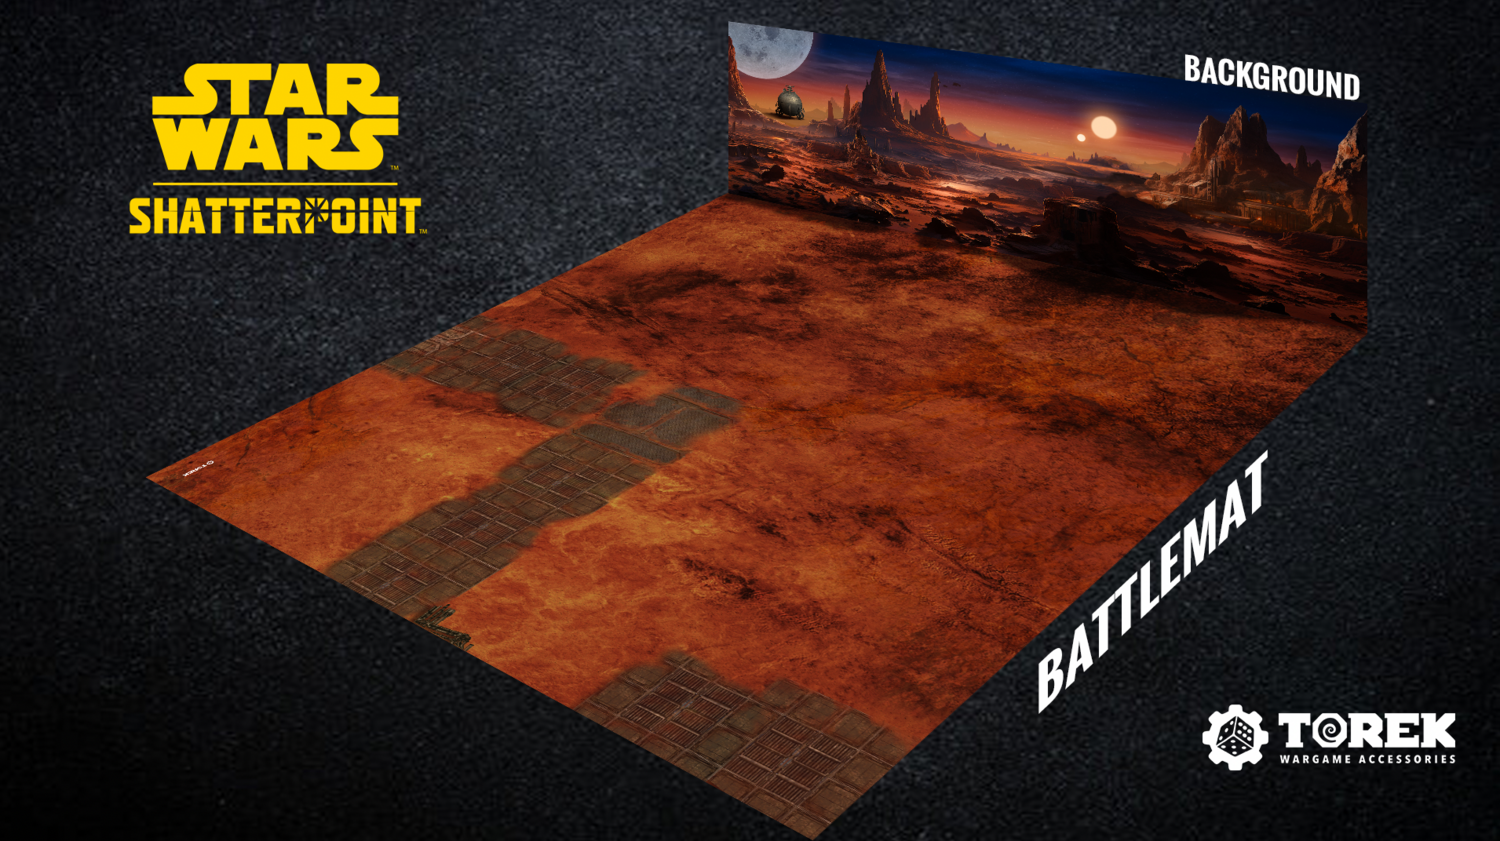 Battlemat Geonosis (Star Wars Shatterpoint)